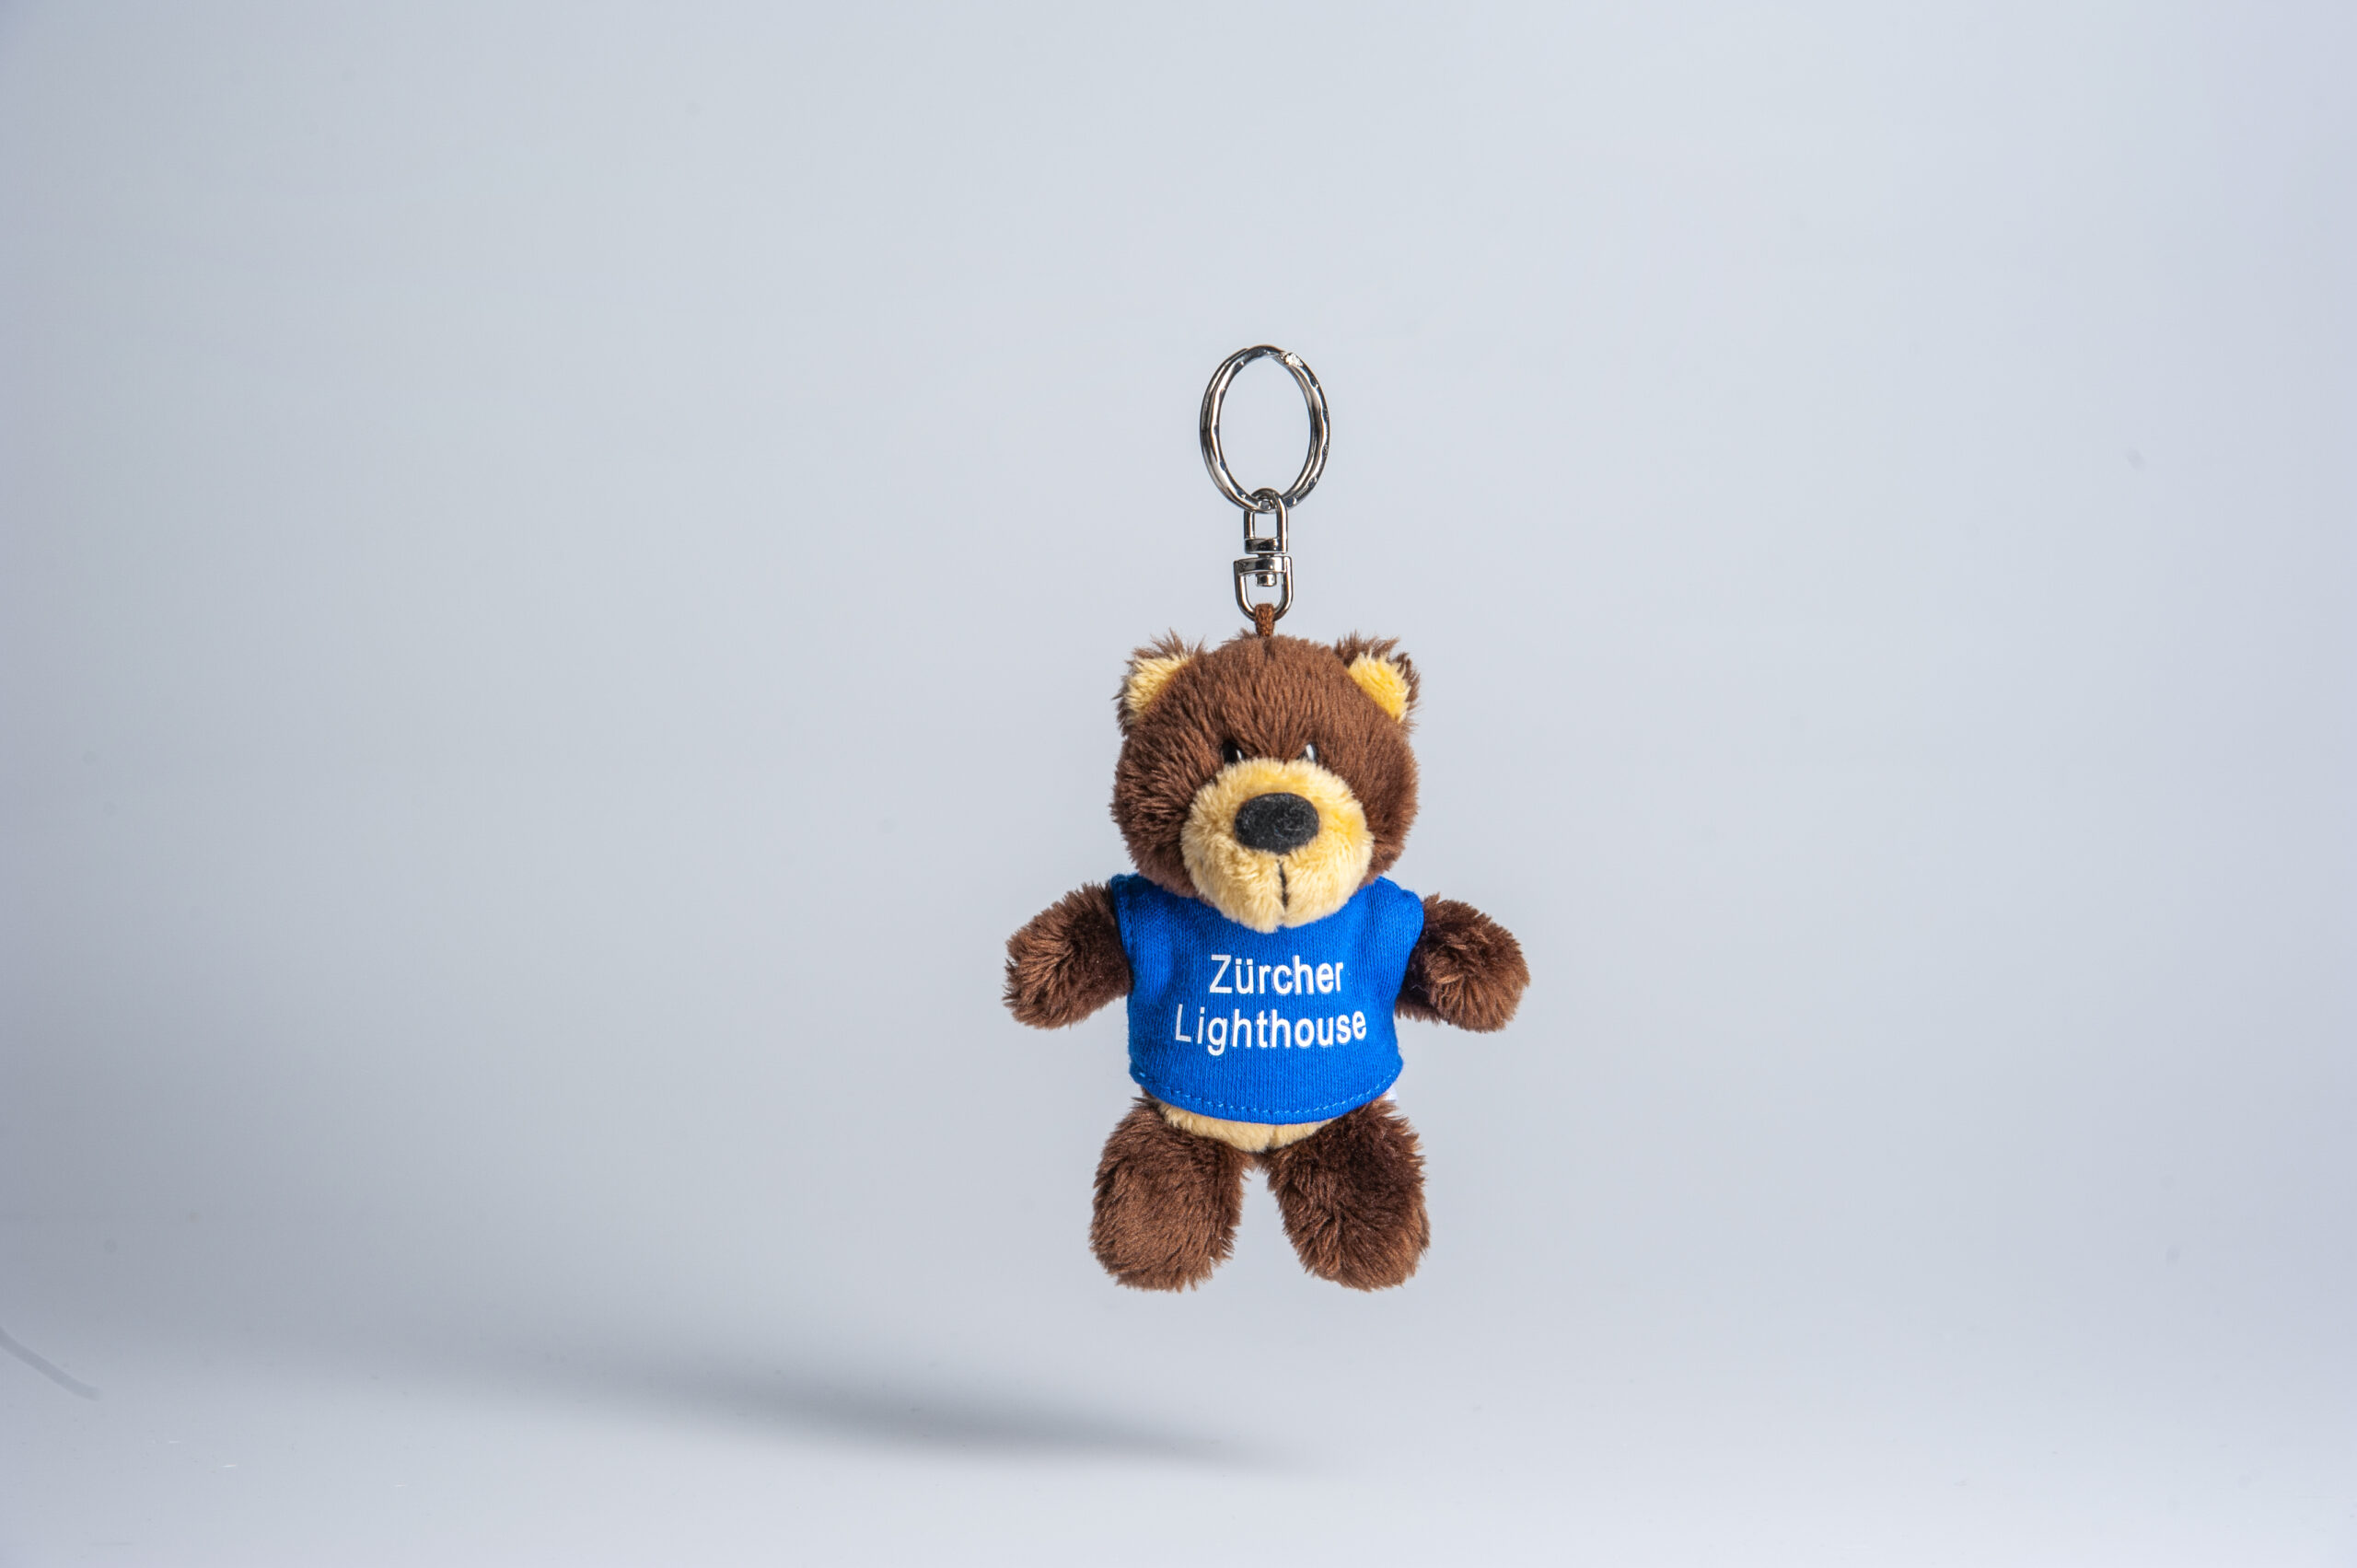 Teddybär Nana ist eine bärenstarke Unterstützung für die Palliative Pflege des Zürcher Lighthouse, Danke für jede Bestellung im Onlineshop